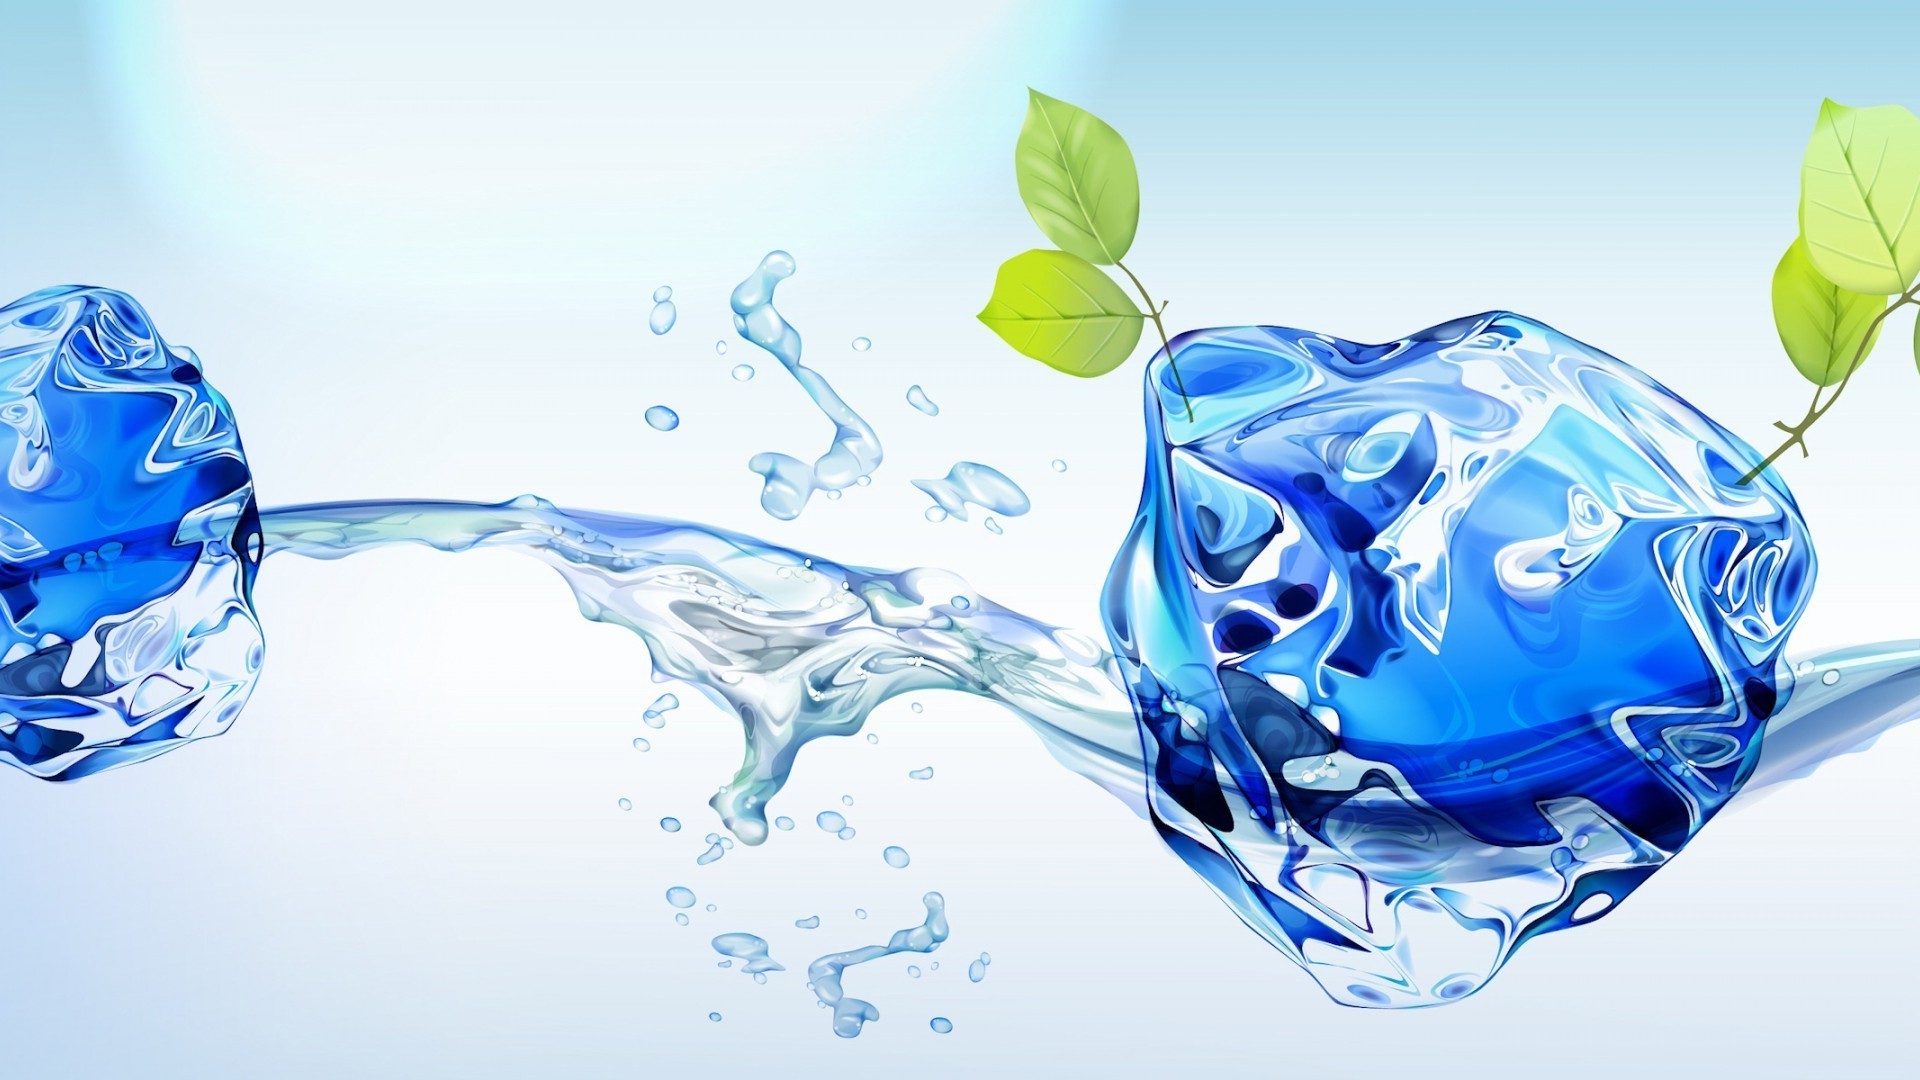 контрасты движения падение всплеск волна пузырь чистота воды понятно жидкость мокрый чистые пульсация поток капли гладкая пить аннотация мыть бирюза